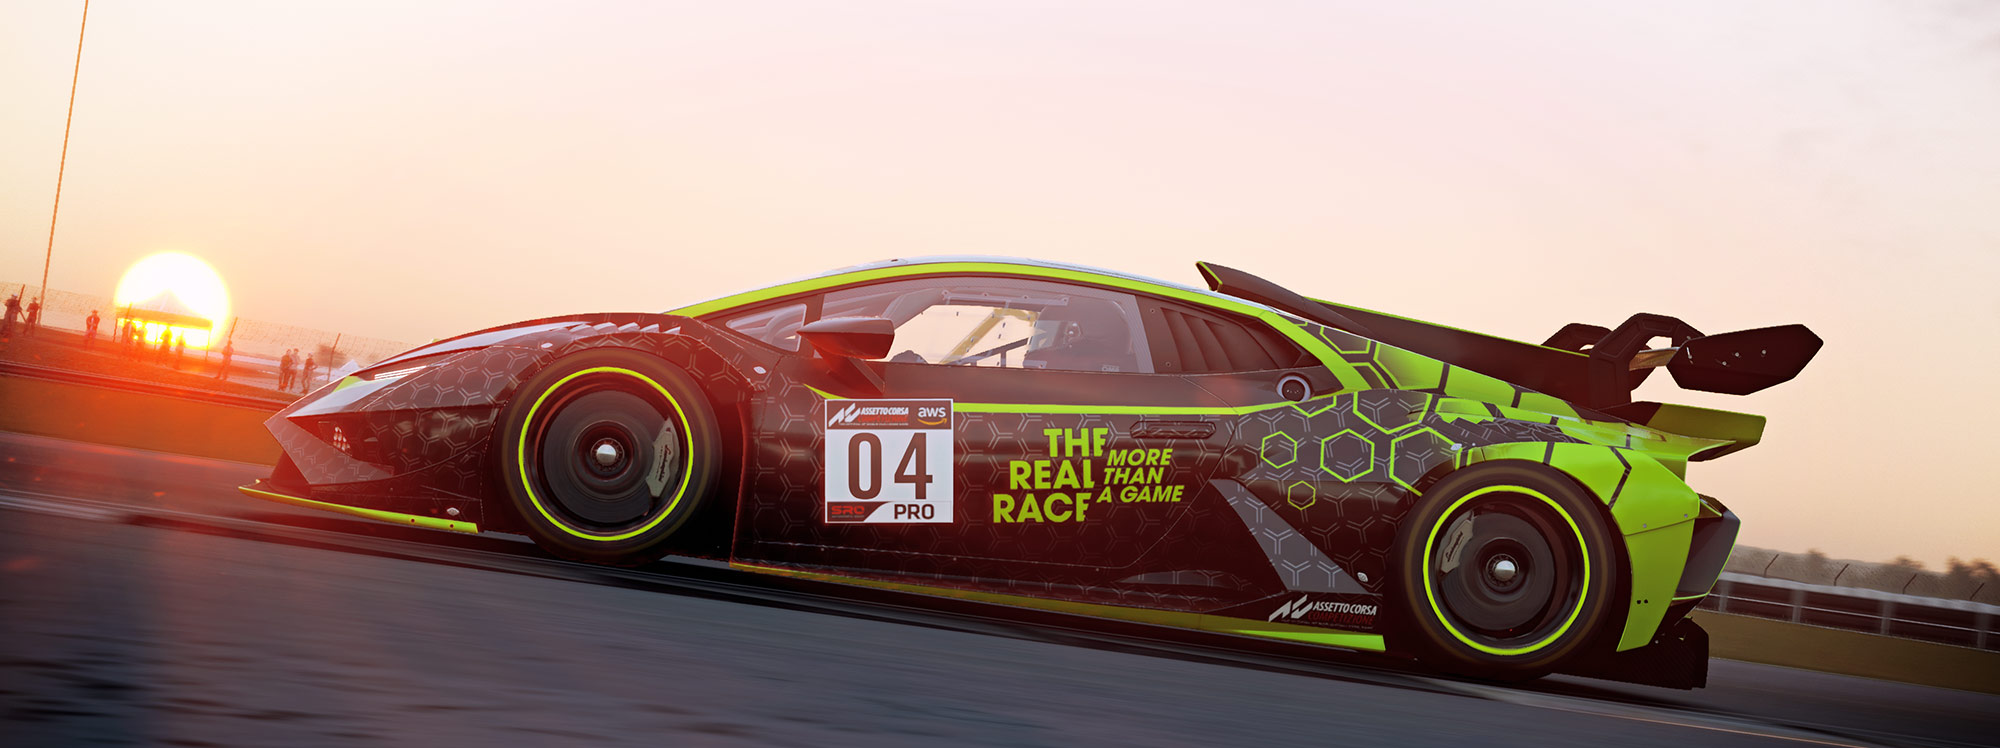 Lamborghini presenta una nueva versión de su torneo para Esports